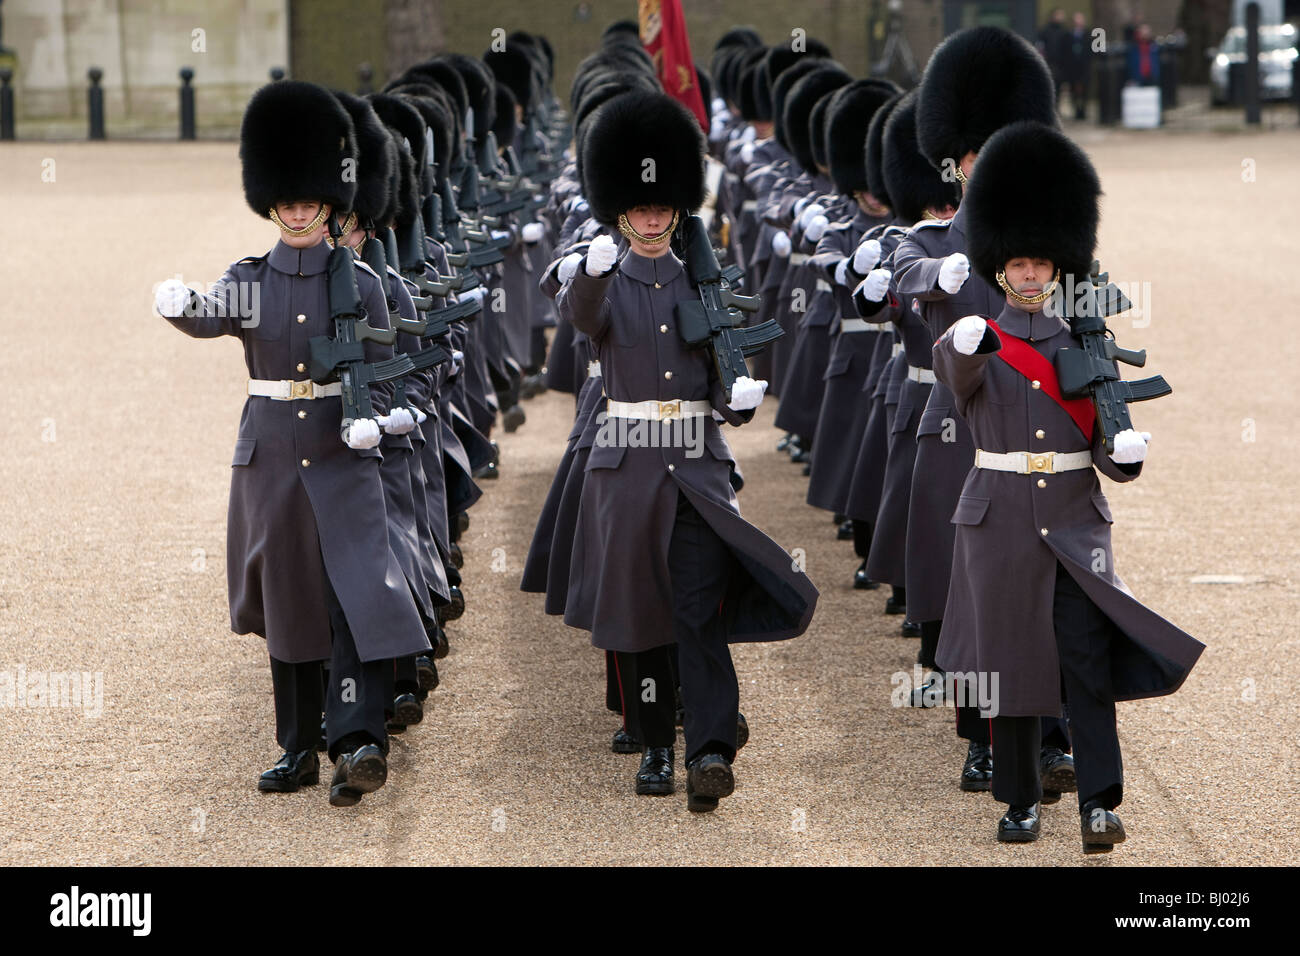 Los soldados británicos del regimiento de Coldstream Guards marzo en formación en Horseguards Parade terreno en el centro de Londres Foto de stock